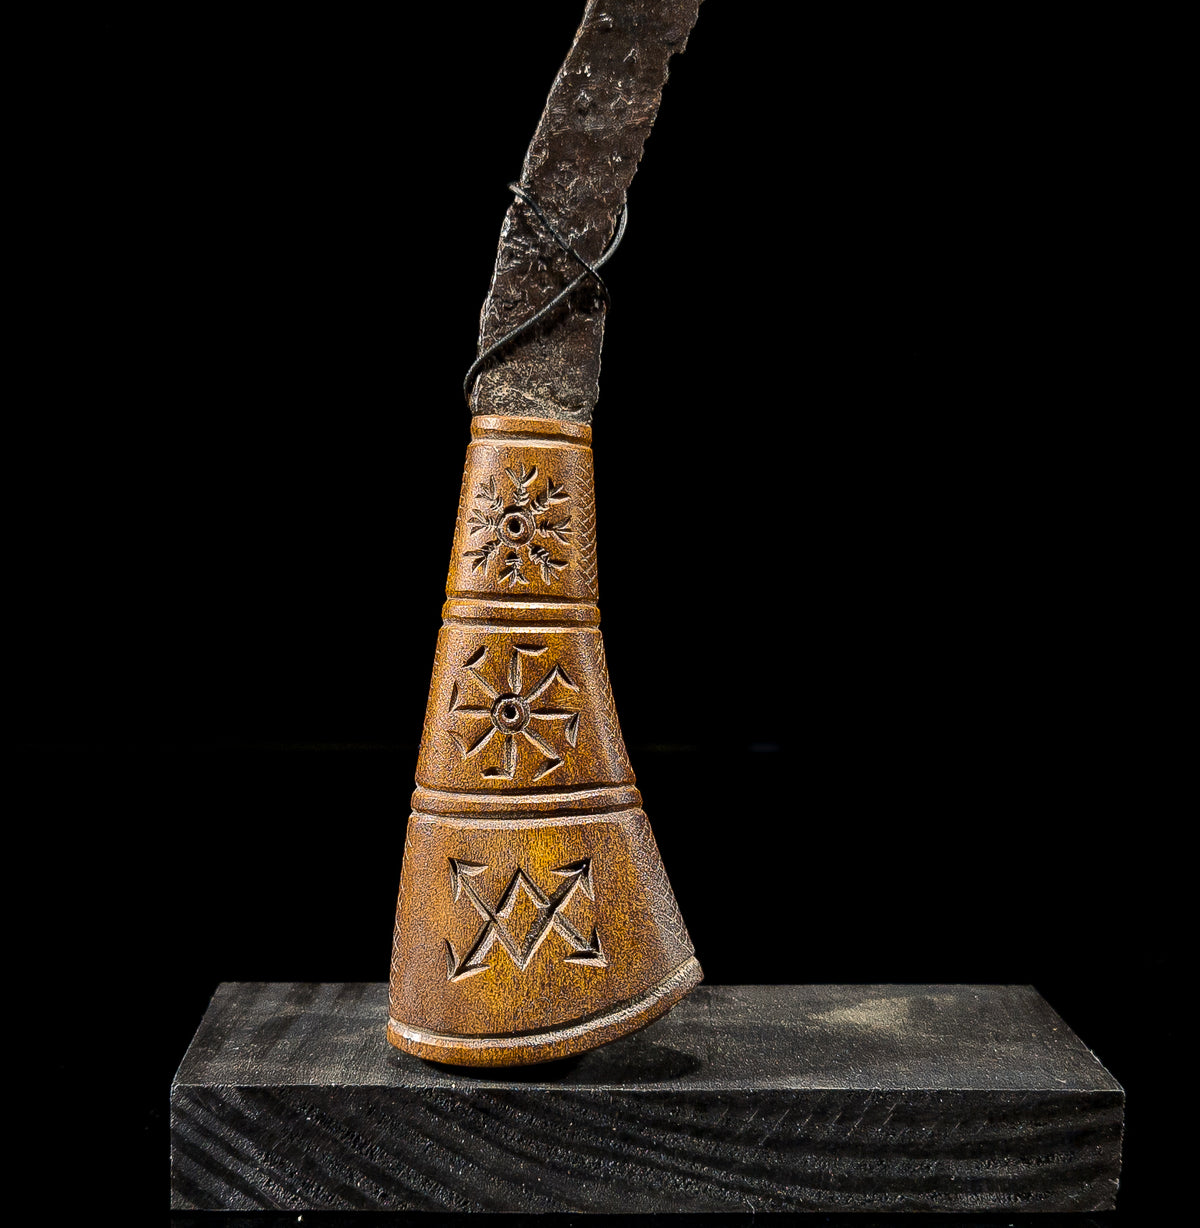 Vikingarna - Kniv i järn 900-1100 AD